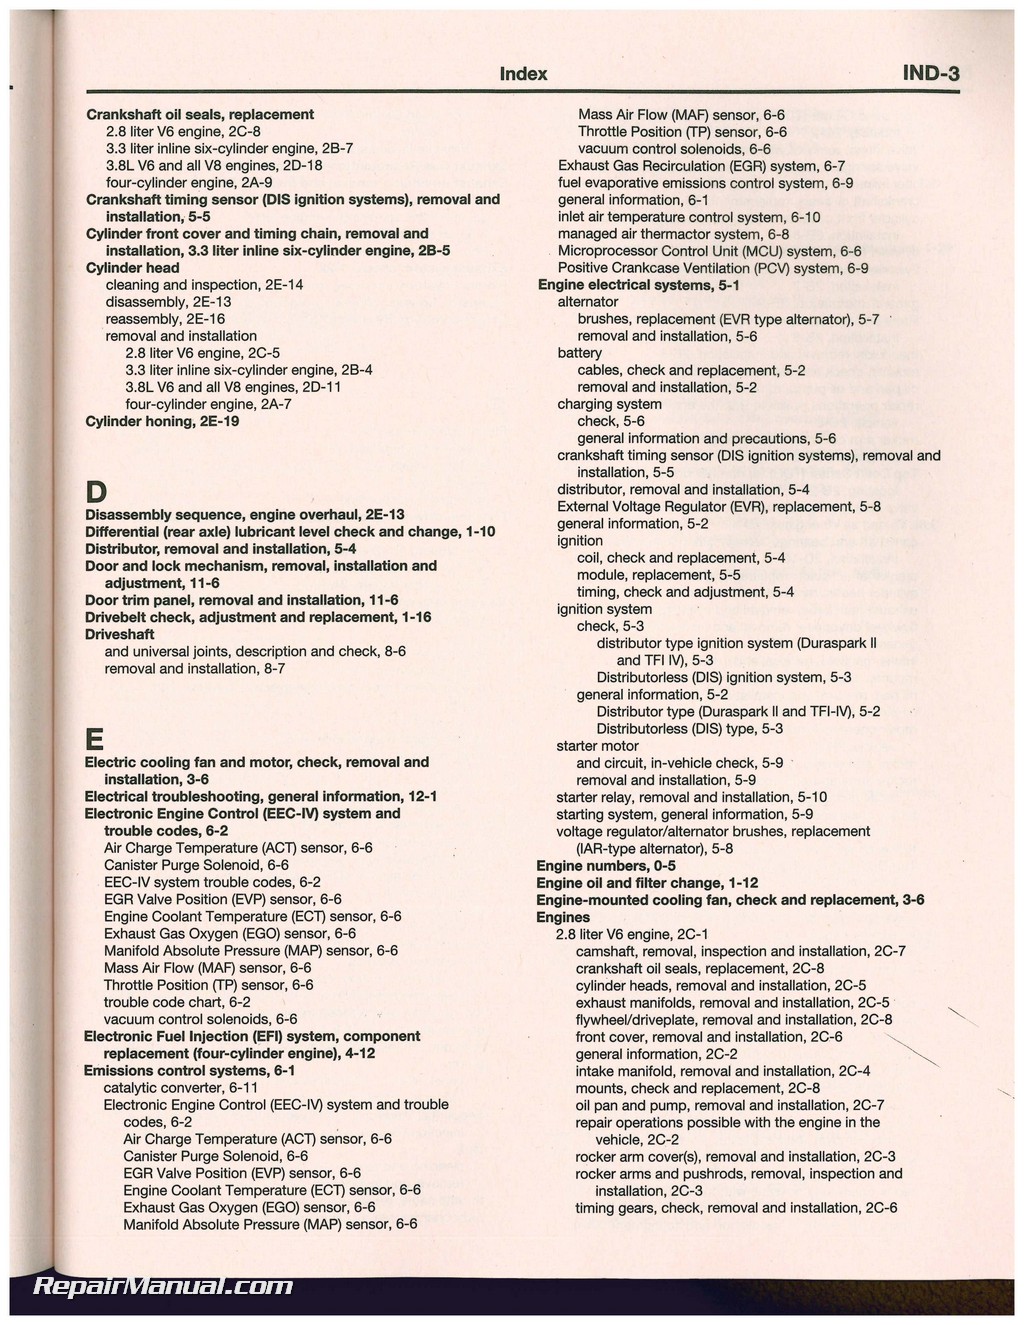 1990 Ford mustang repair manual #7